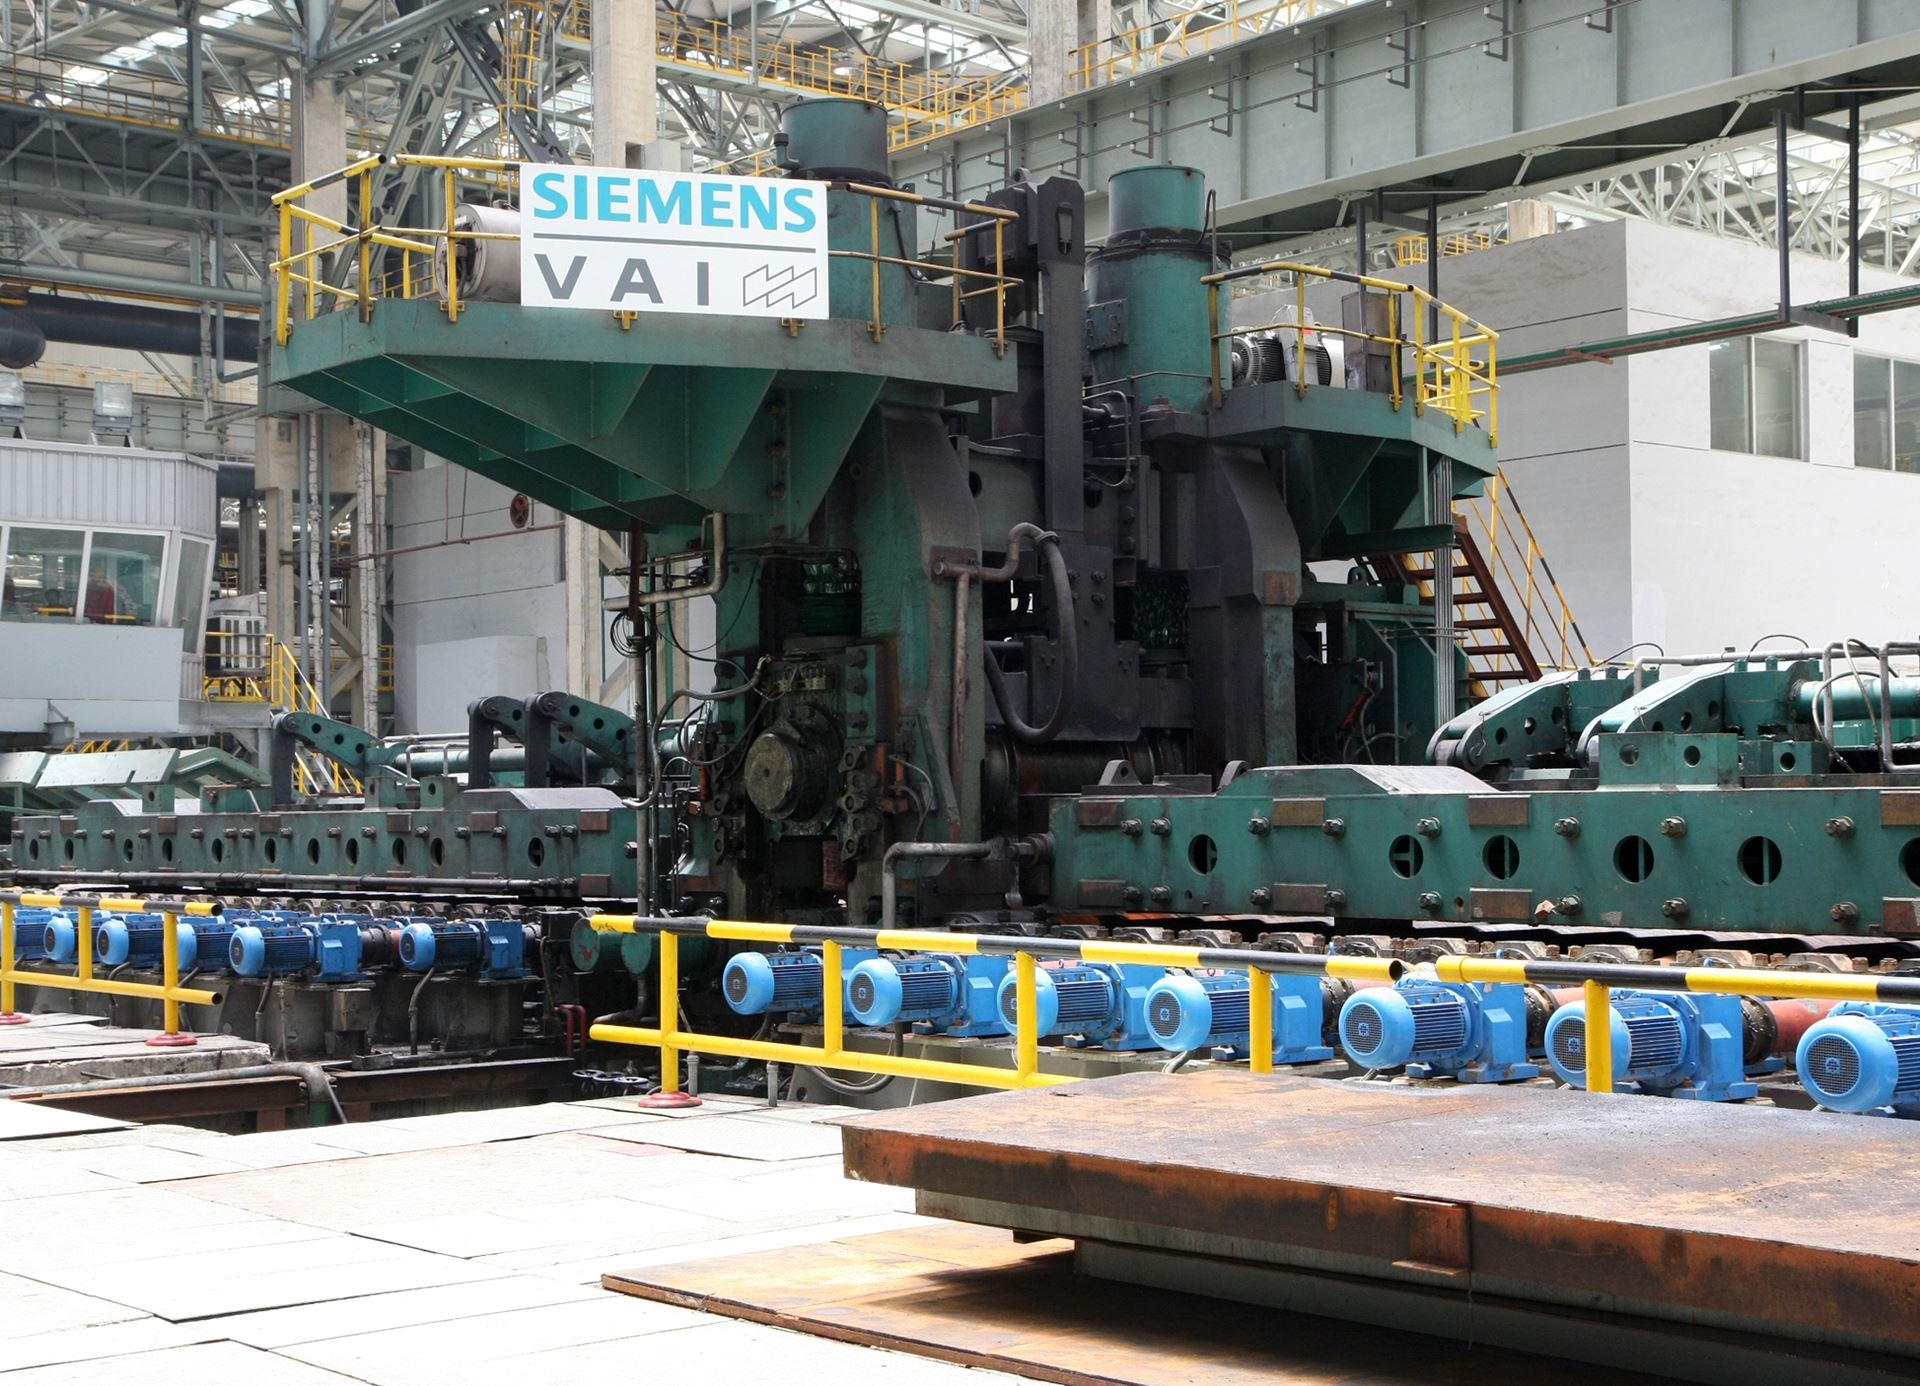 İtalya'nın Acciaierie Venete şirketi çelik işleme tesisi kurmak için Siemens'i görevlendirdi